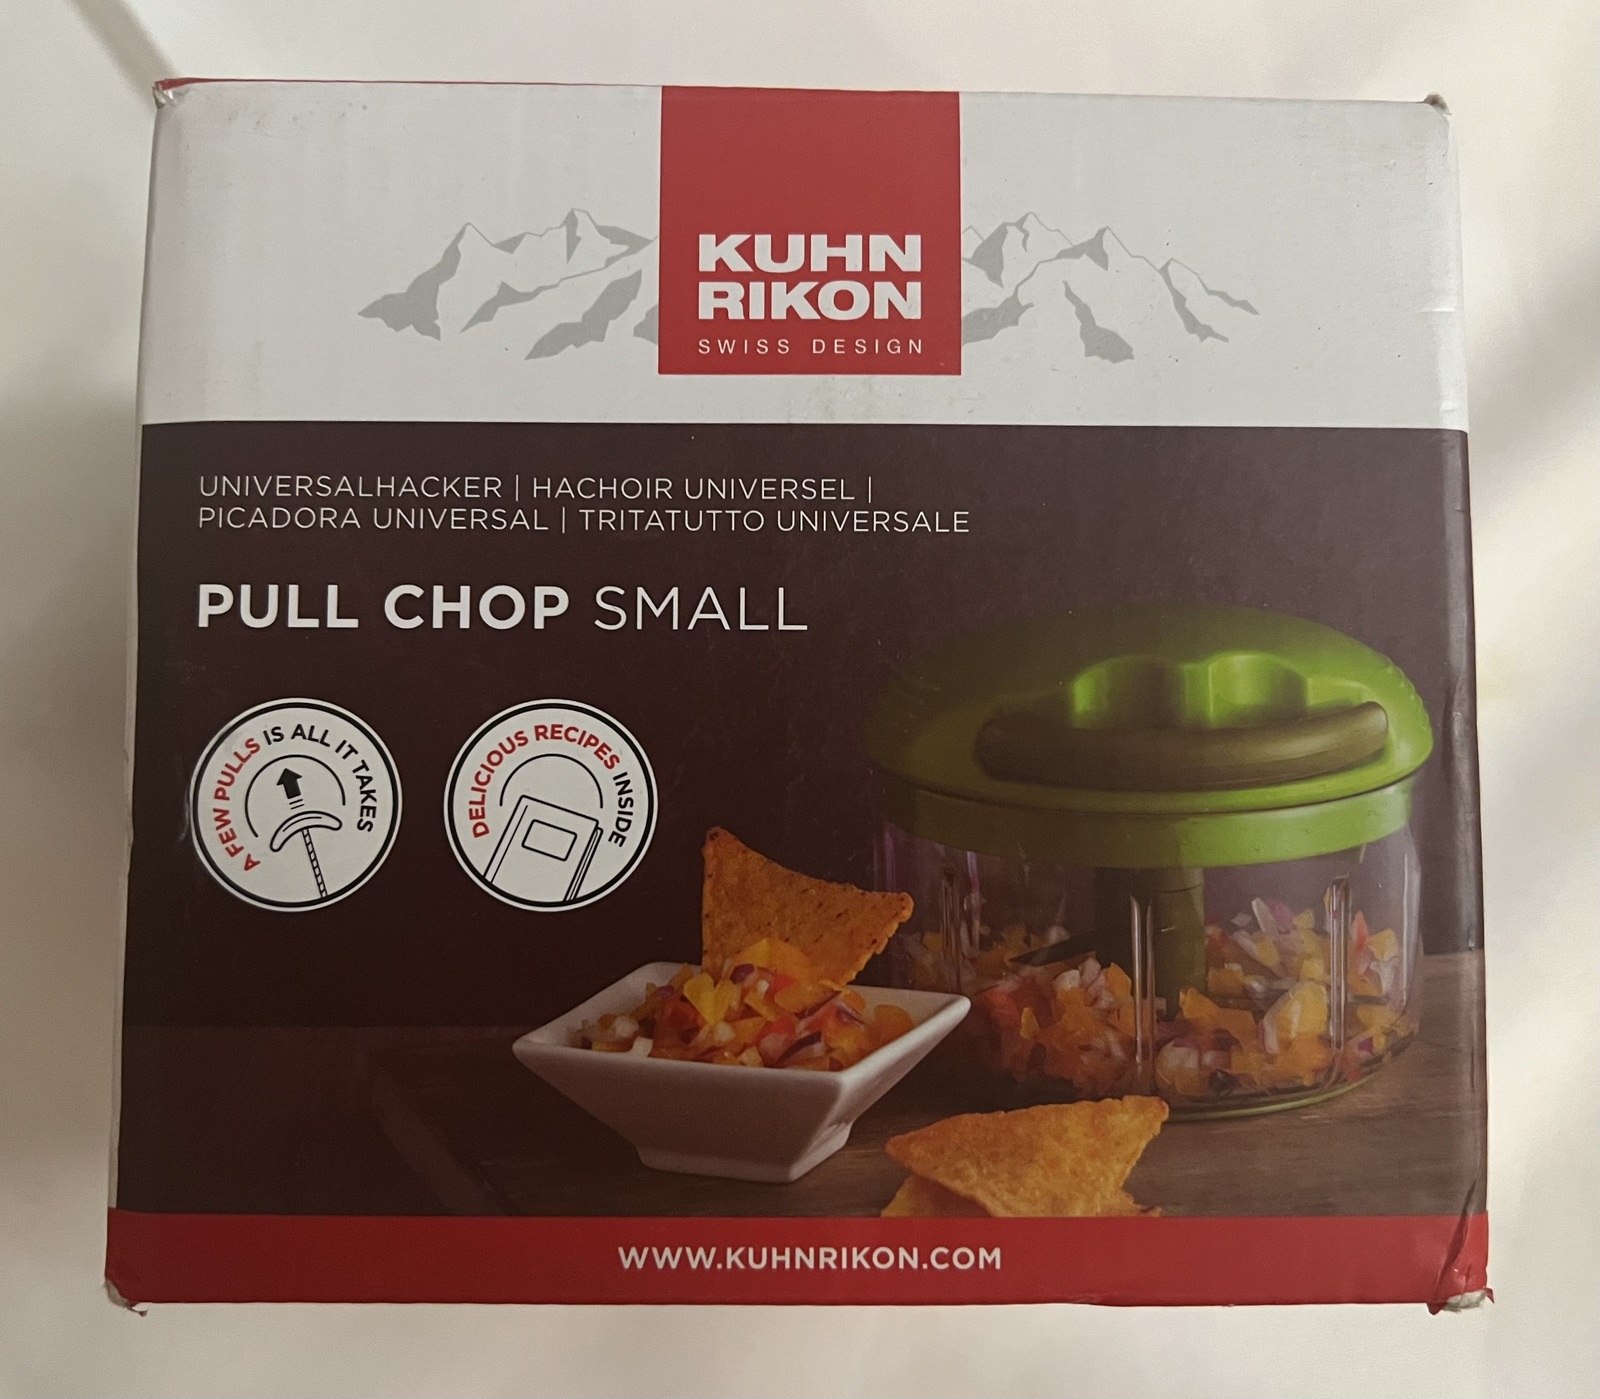 Kuhn Rikon Swiss Small Pull Chop Manual Food Chopper Black New in